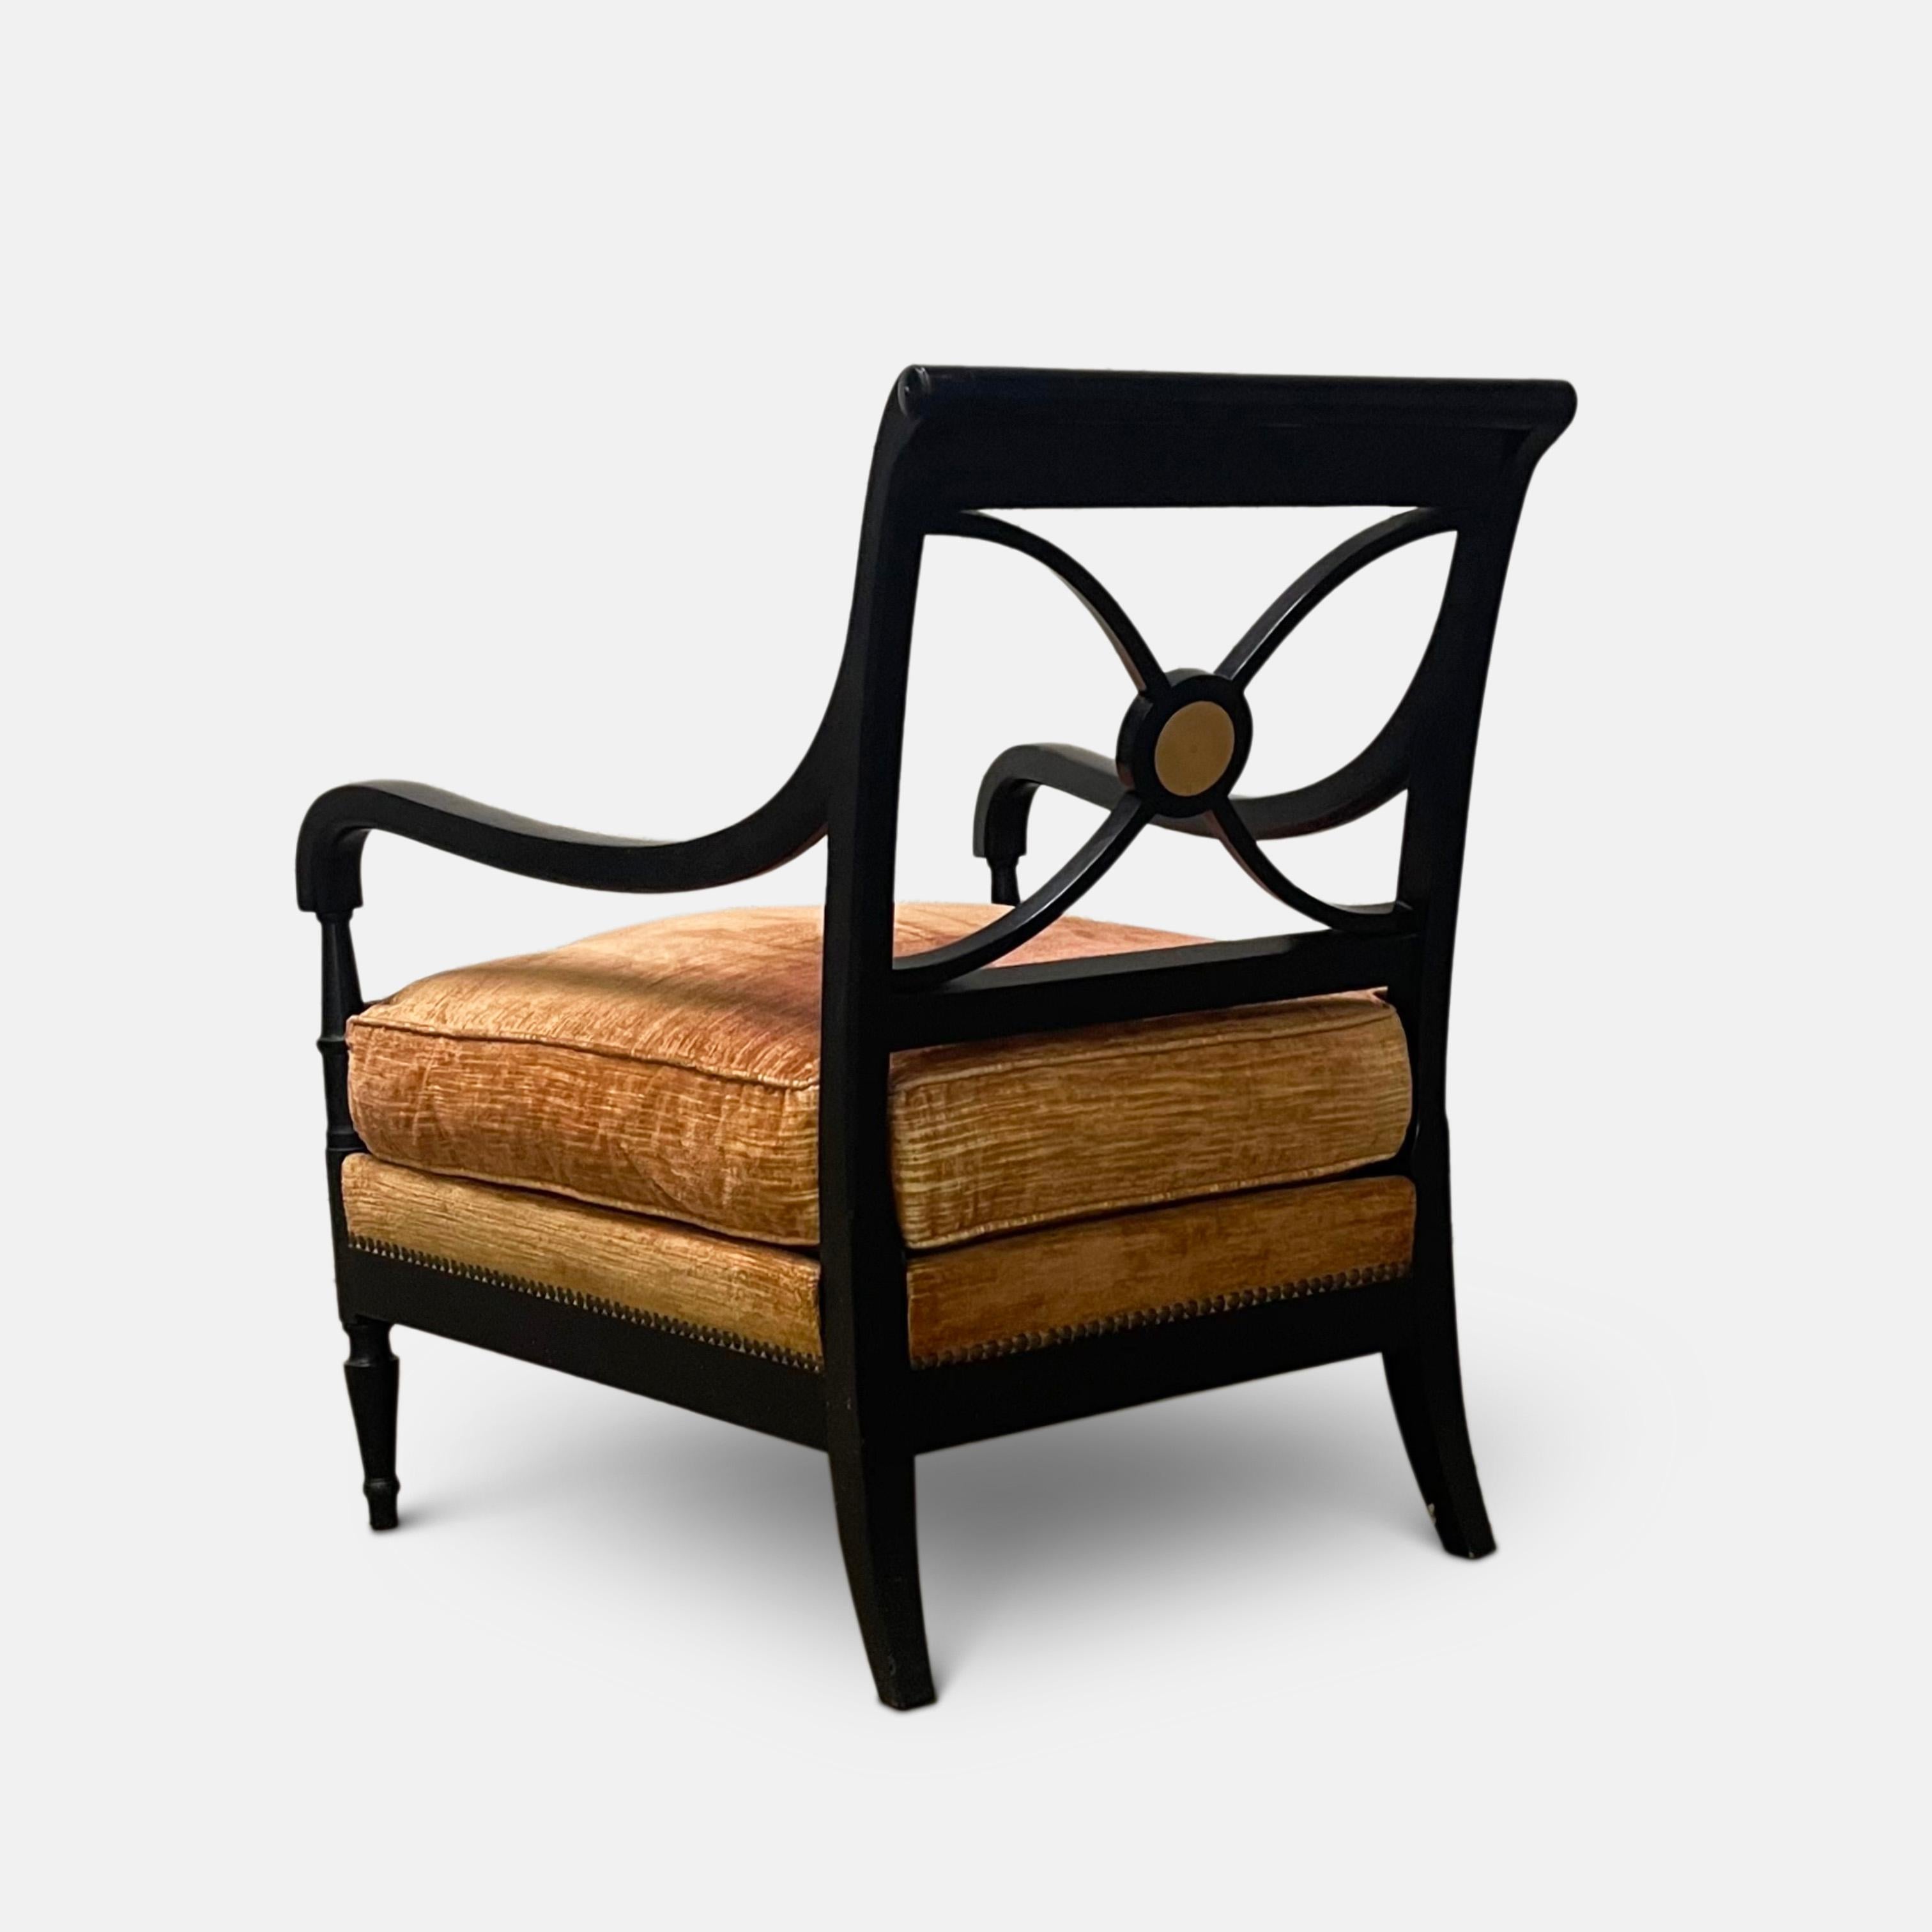 Ein Paar Stühle von Maison Jansen, um 1940.
Schwarz ebonisiert, mit schön geschwungenen Arm- und Rückenlehnen, die auf den typischen neoklassizistischen Beinen von Jansen ruhen, mit einem  kreisförmige Messingscheibeneinlage in der Mitte.